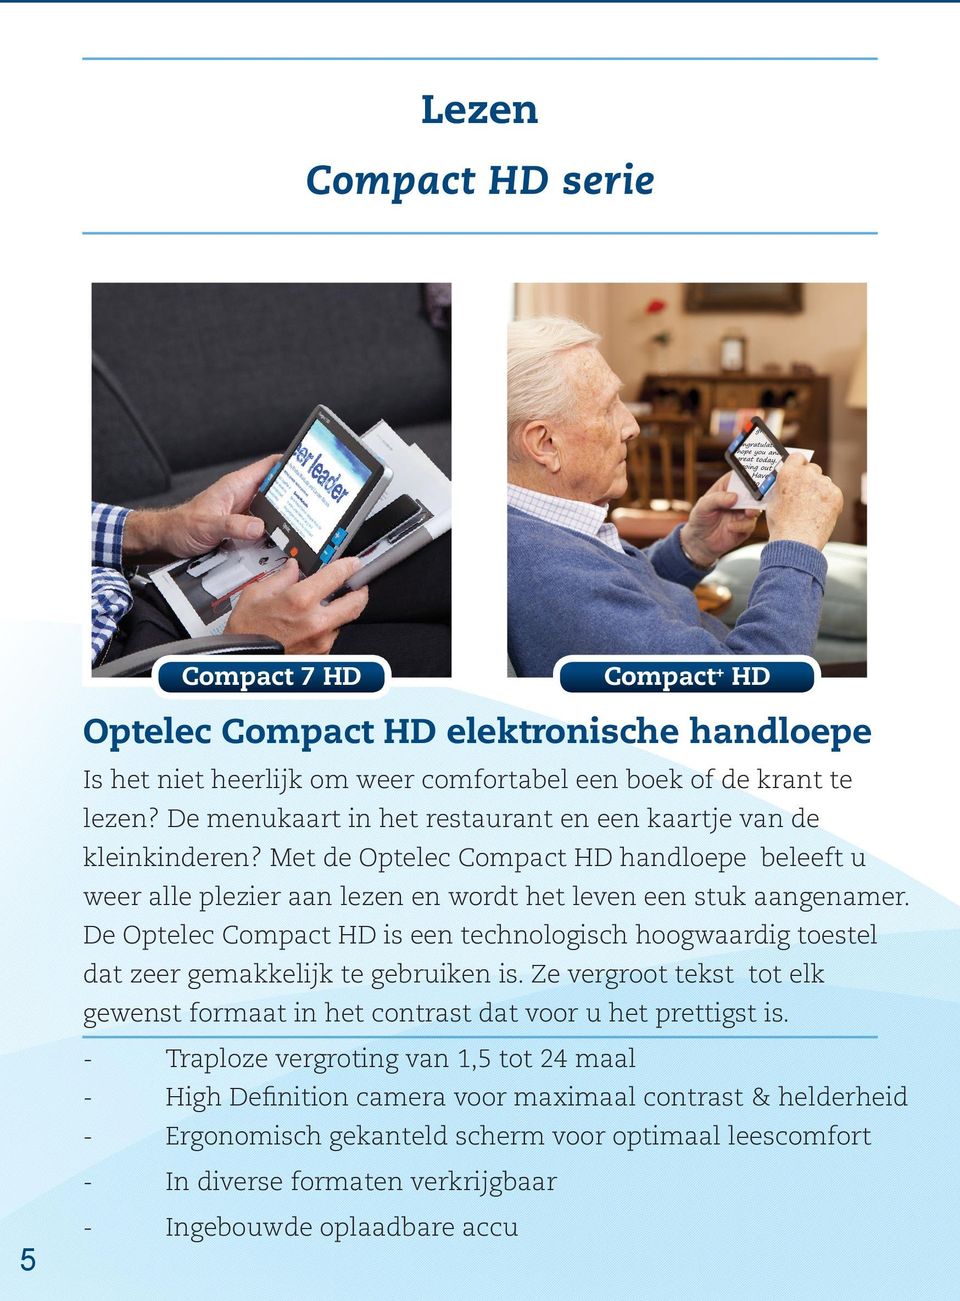 De Optelec Compact HD is een technologisch hoogwaardig toestel dat zeer gemakkelijk te gebruiken is. Ze vergroot tekst tot elk gewenst formaat in het contrast dat voor u het prettigst is.